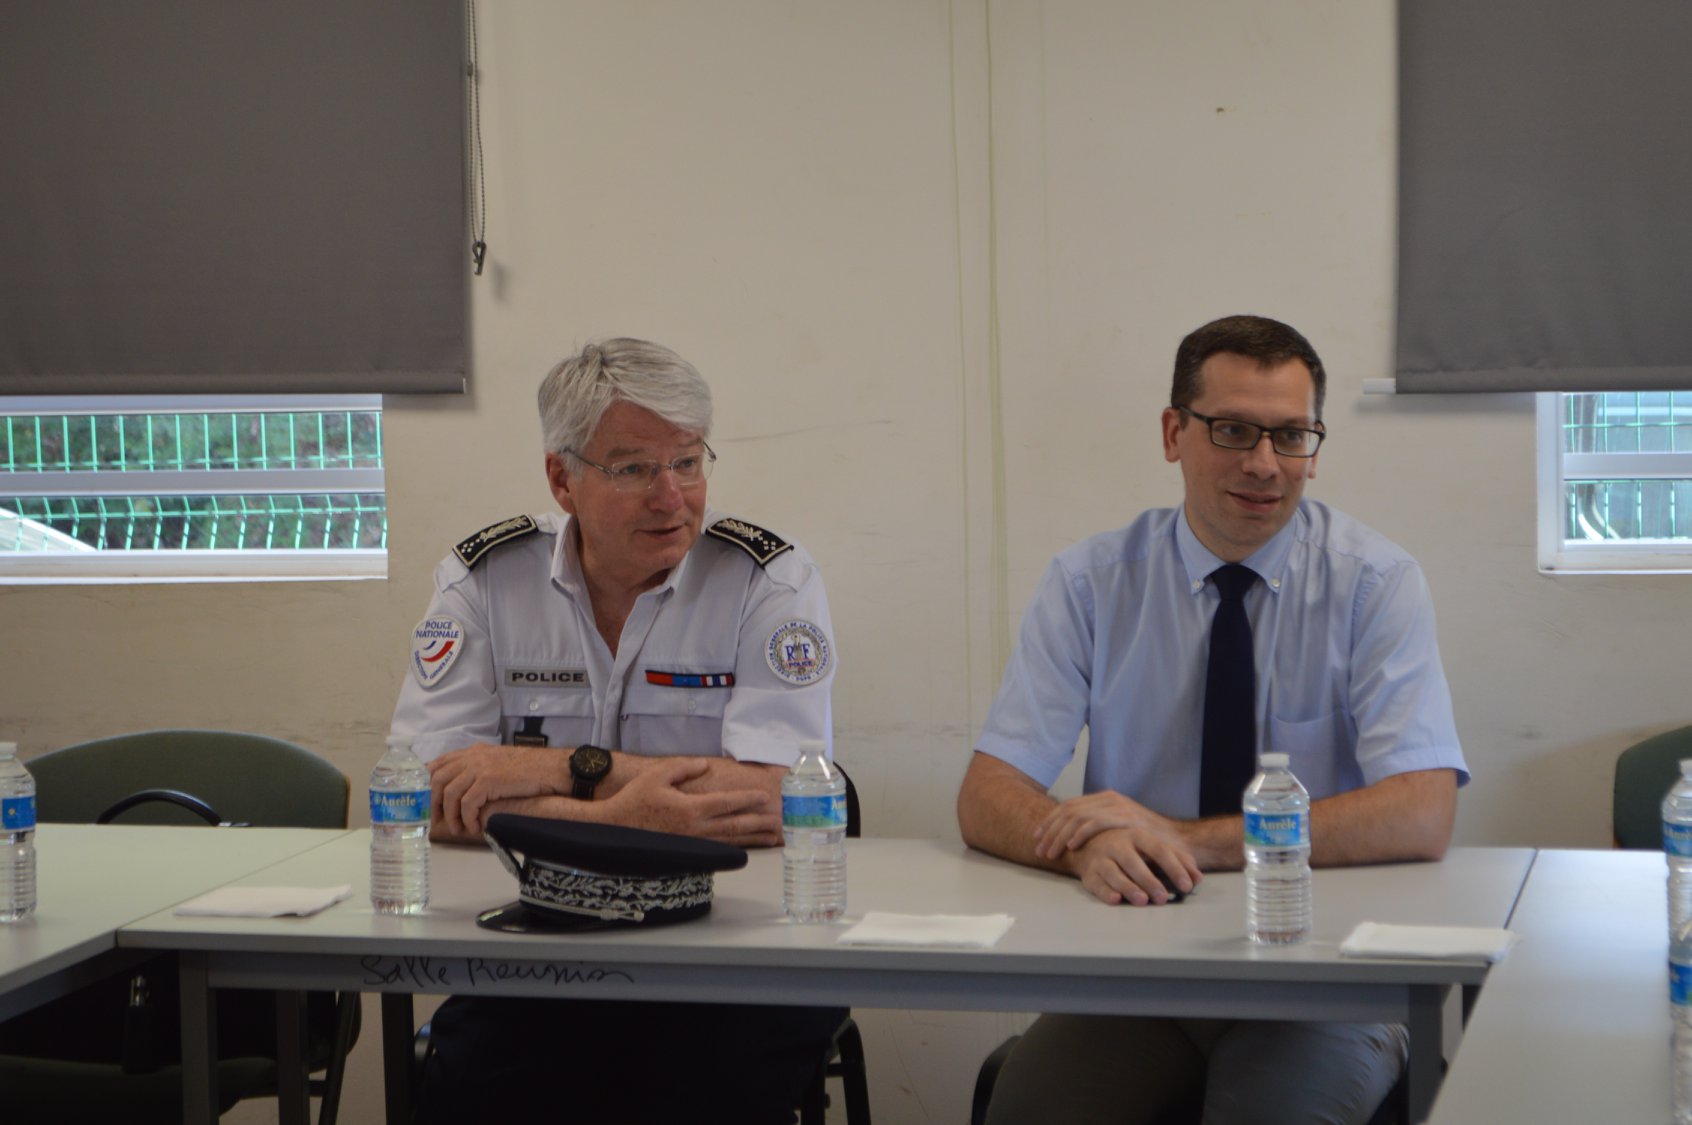 Sécurité en Outre-mer : Eric Morvan, directeur de la police nationale va expérimenter une nouvelle organisation de la police nationale en outre-mer